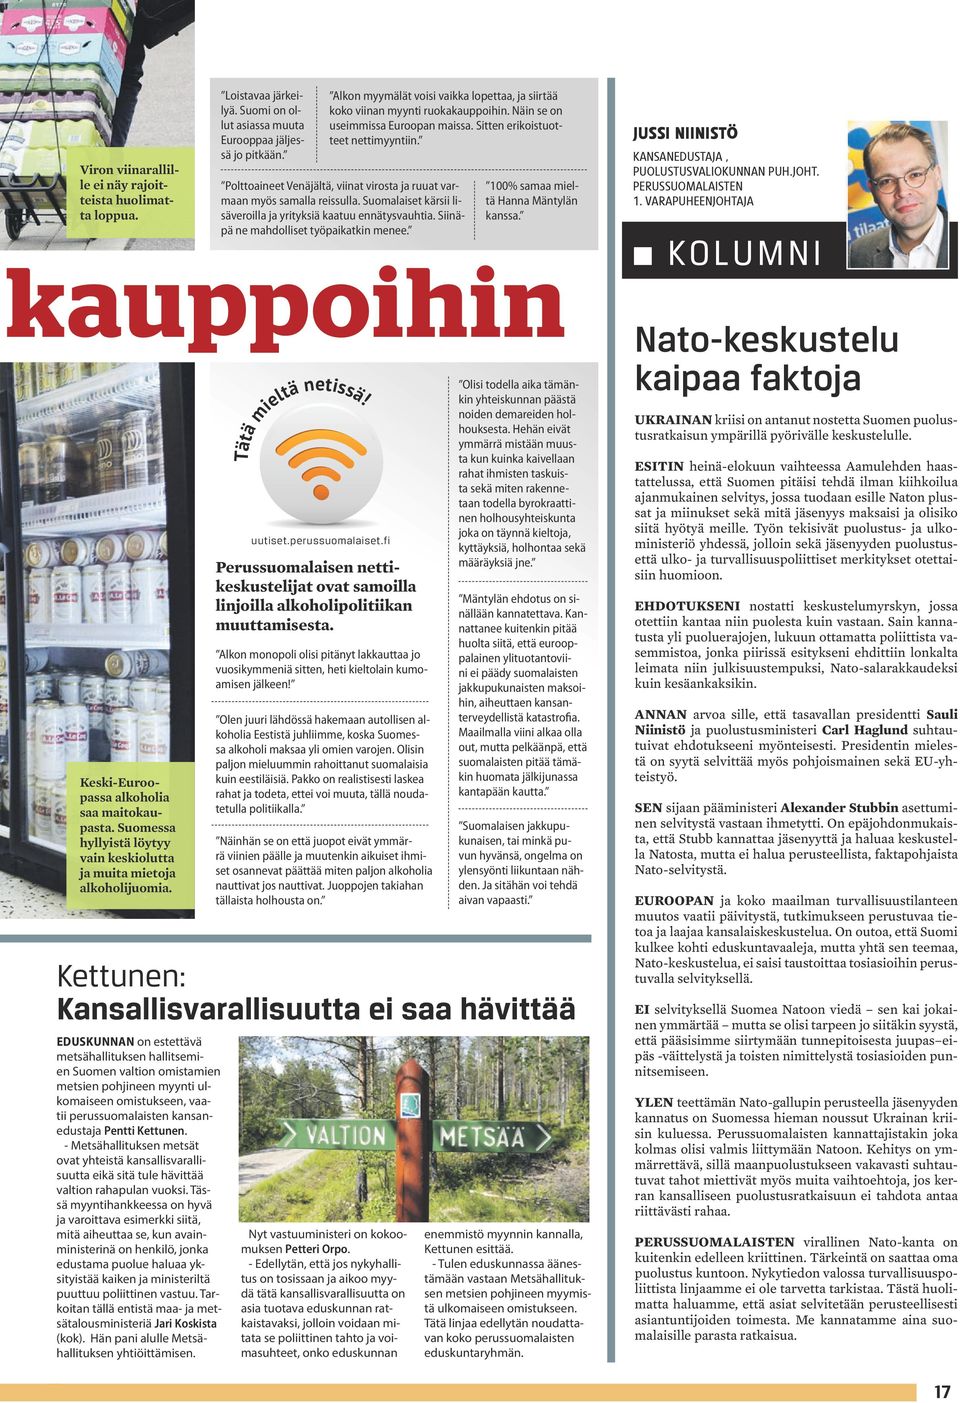 Kettunen: Kansallisvarallisuutta ei saa hävittää EDUSKUNNAN on estettävä metsähallituksen hallitsemien Suomen valtion omistamien metsien pohjineen myynti ulkomaiseen omistukseen, vaatii